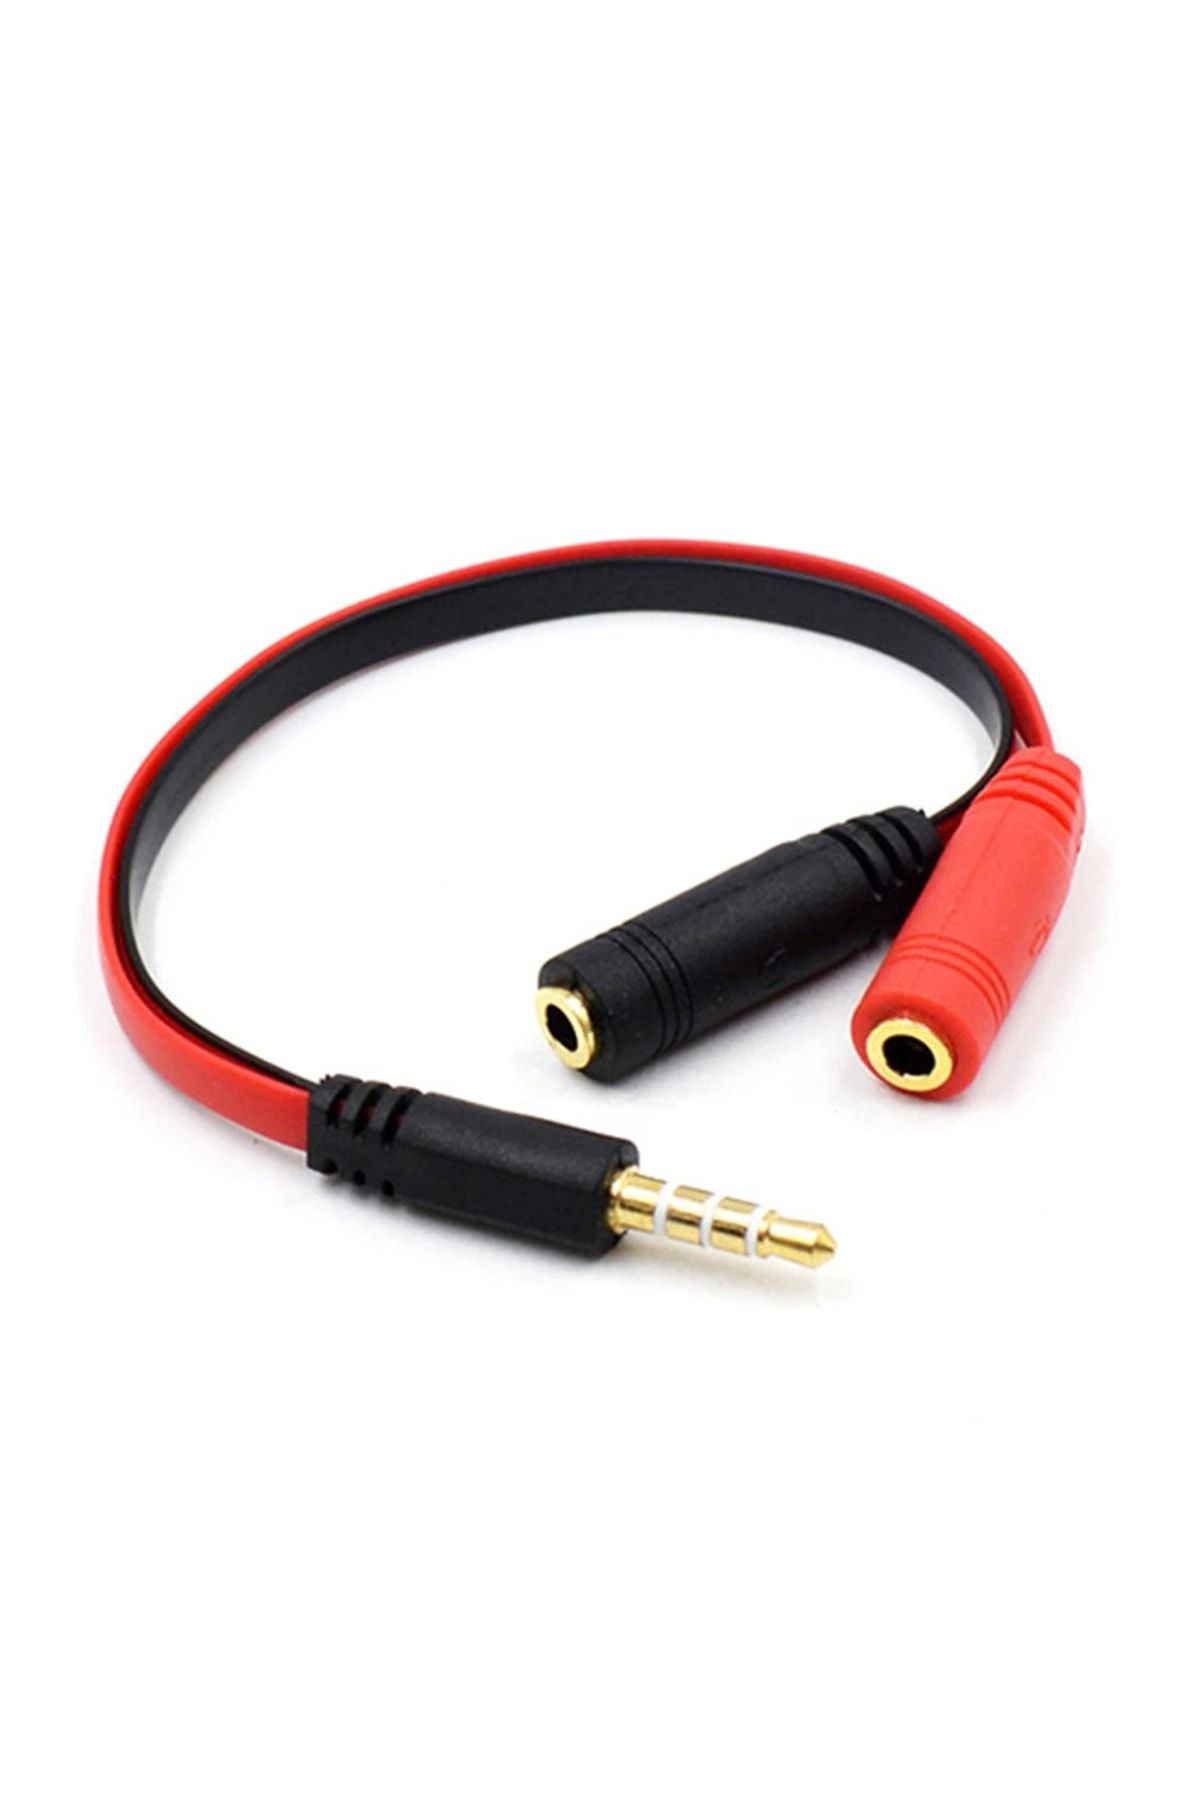 aogo Kulaklık Mikrofon Birleştirici Kablo Aparat 3.5mm Erkek 2x3.5mm Dişi Kulaklık Mic Audio Y Splitter